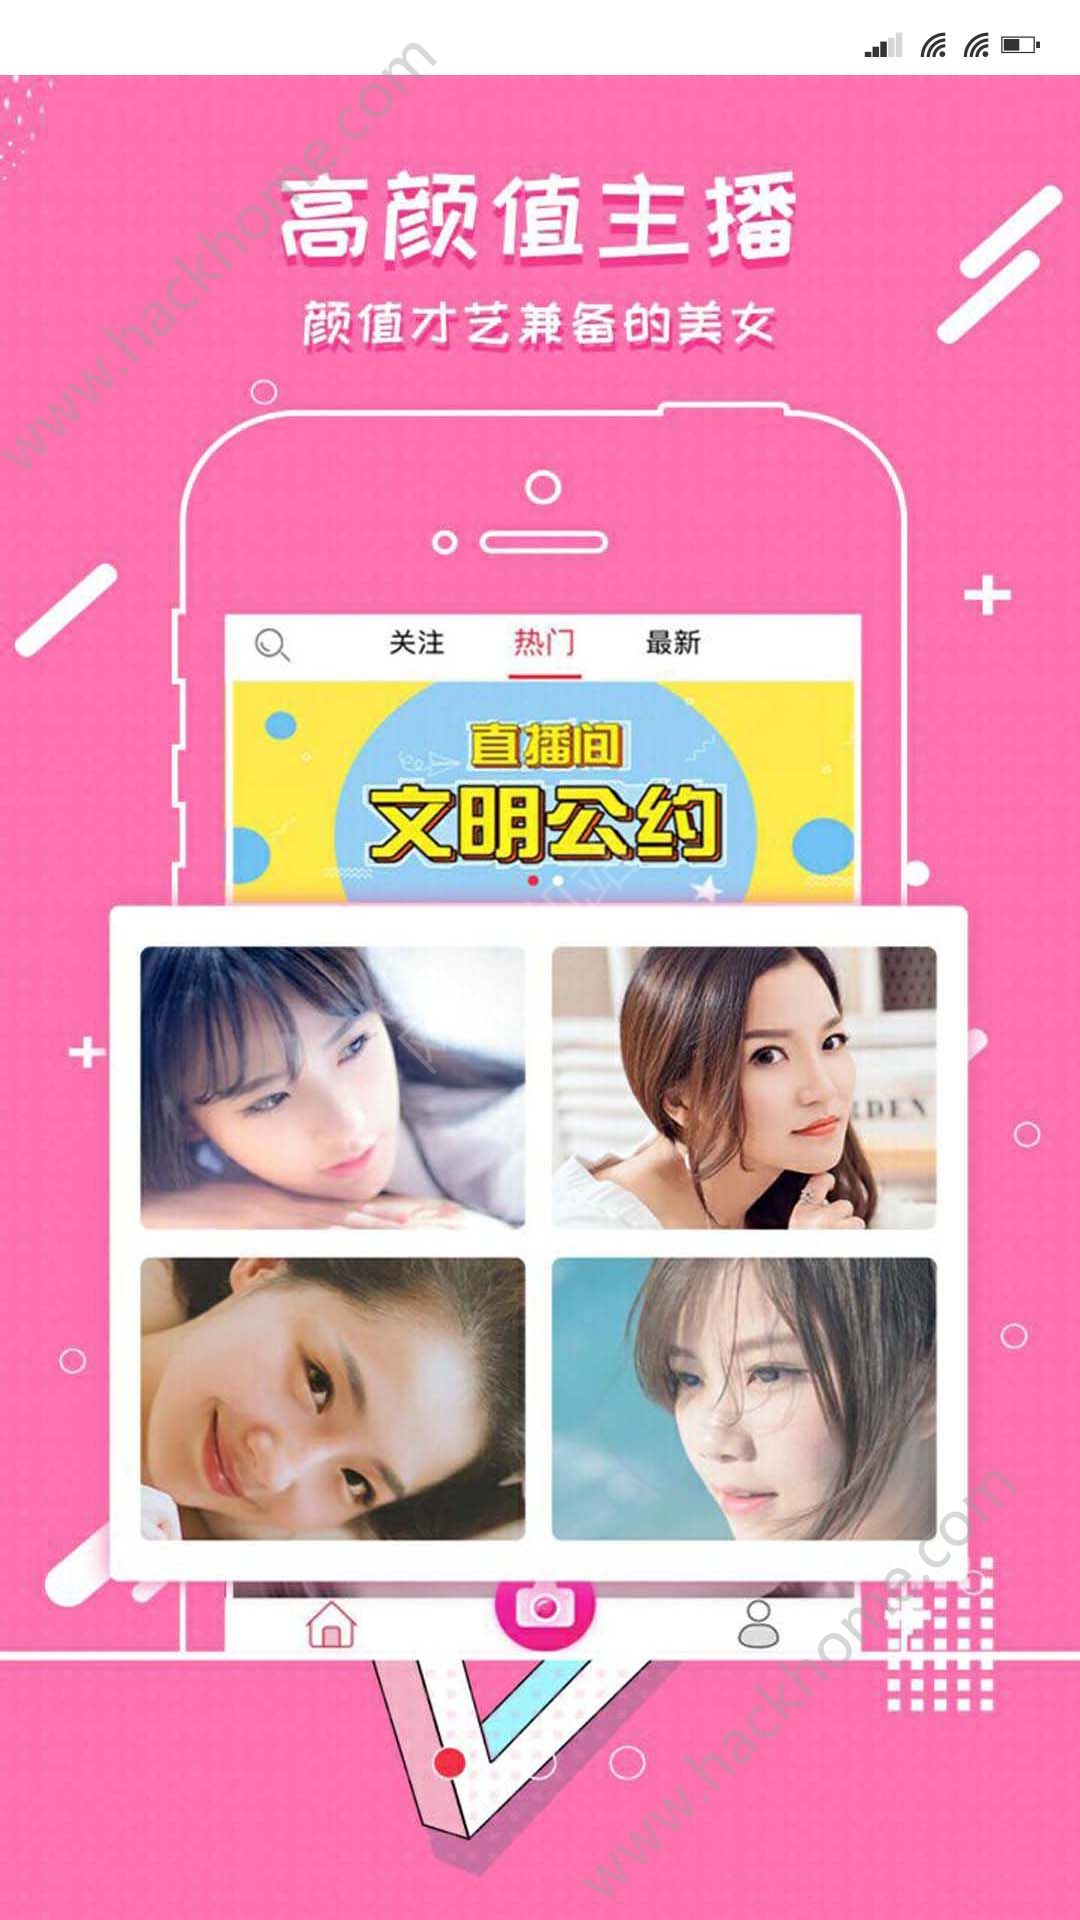 直播live官网 宝贝live直播app